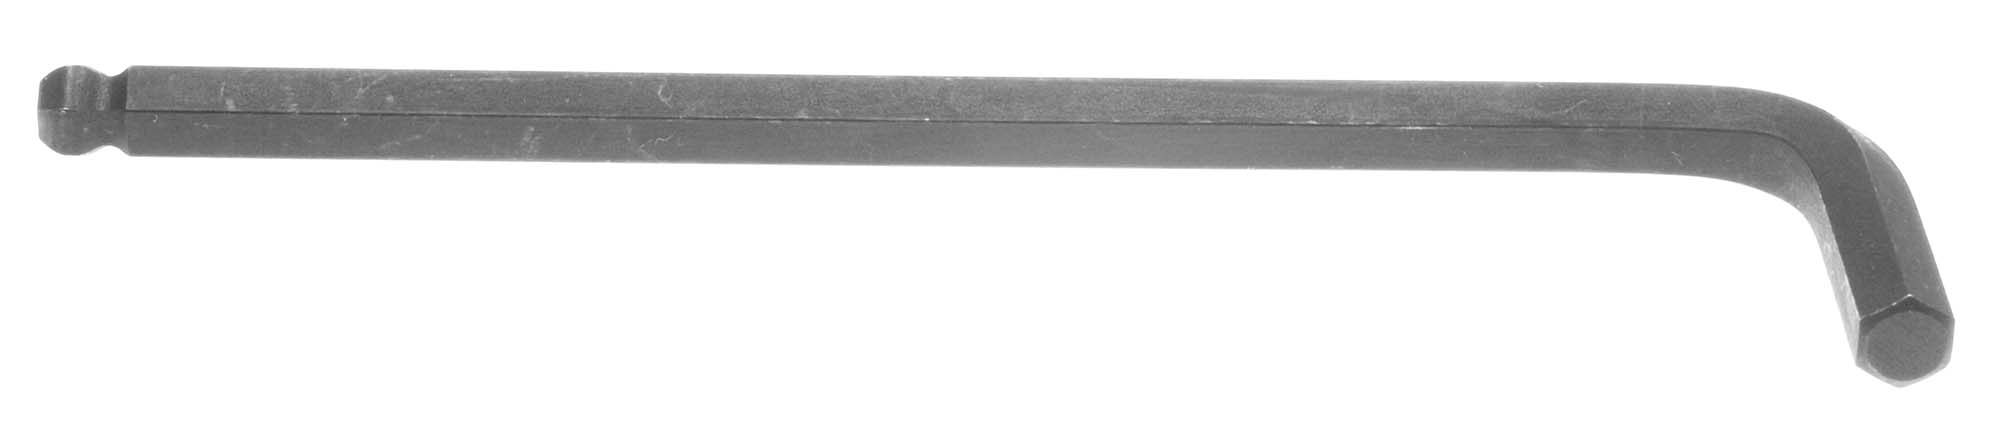 5/32" Bondhus Balldriver L-Wrench Hex Key